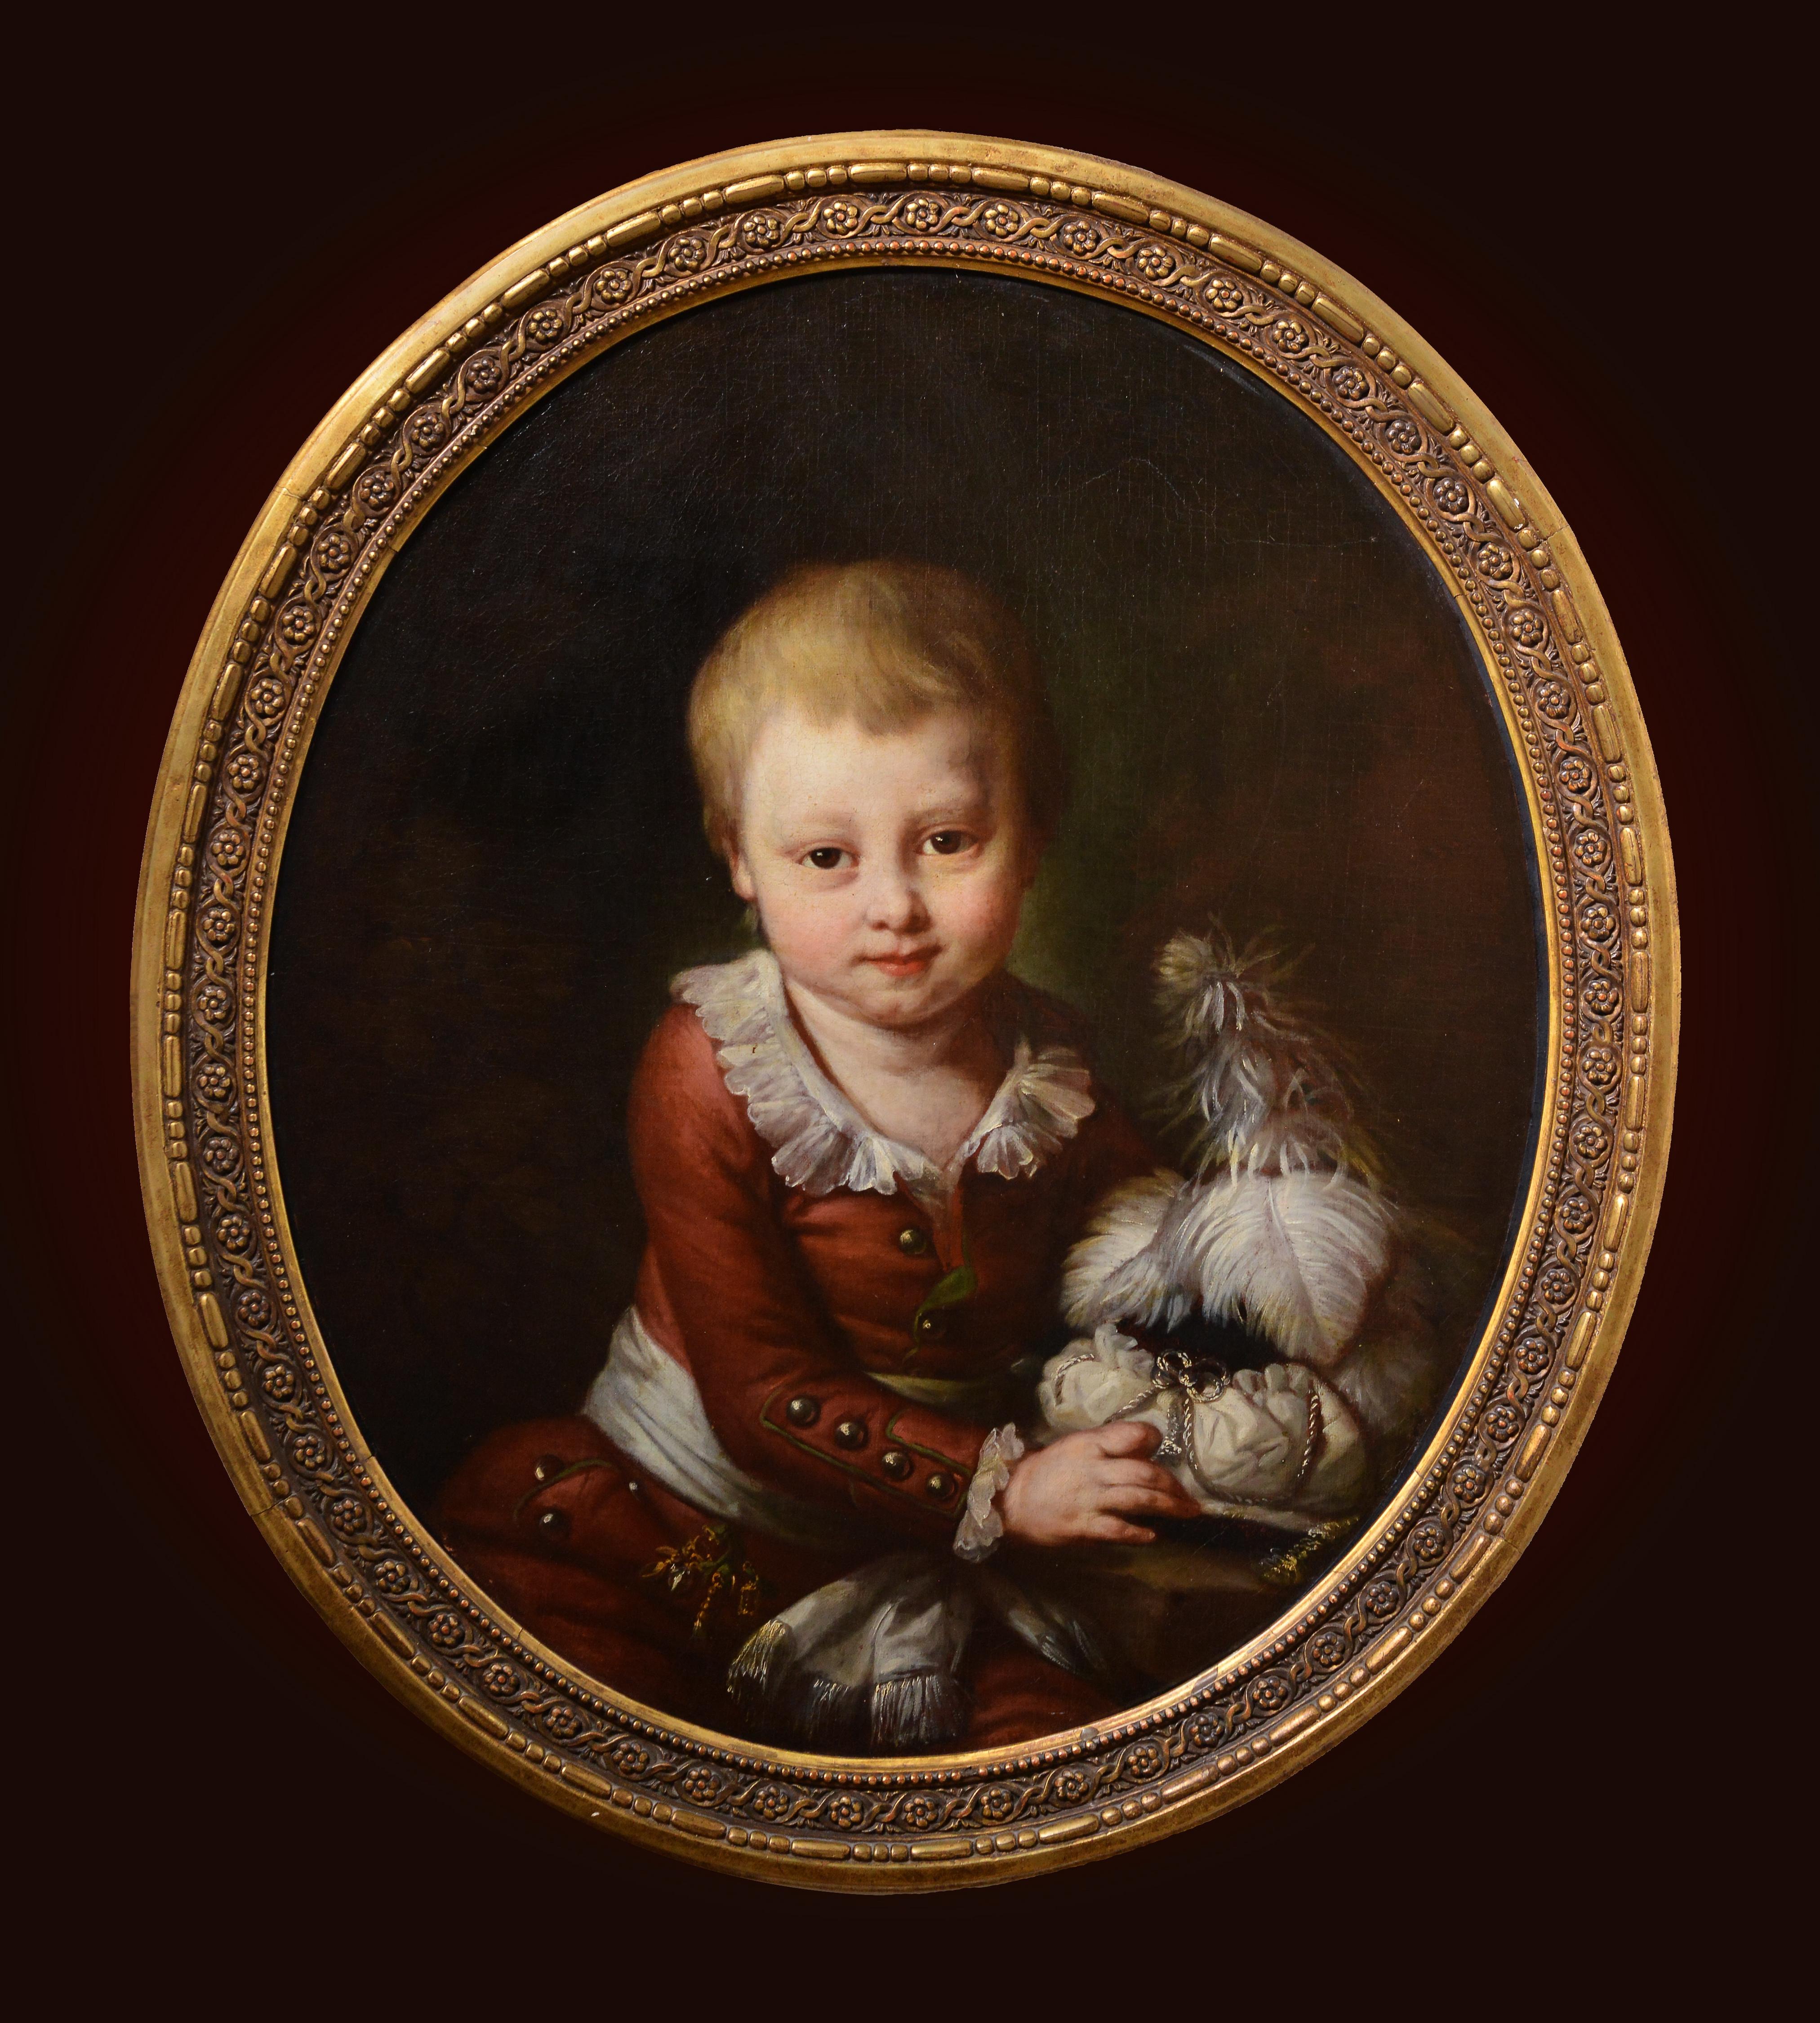 Monique Daniche Portrait Painting - Portrait of a Сhild 18th century French master Baroque Oil Painting